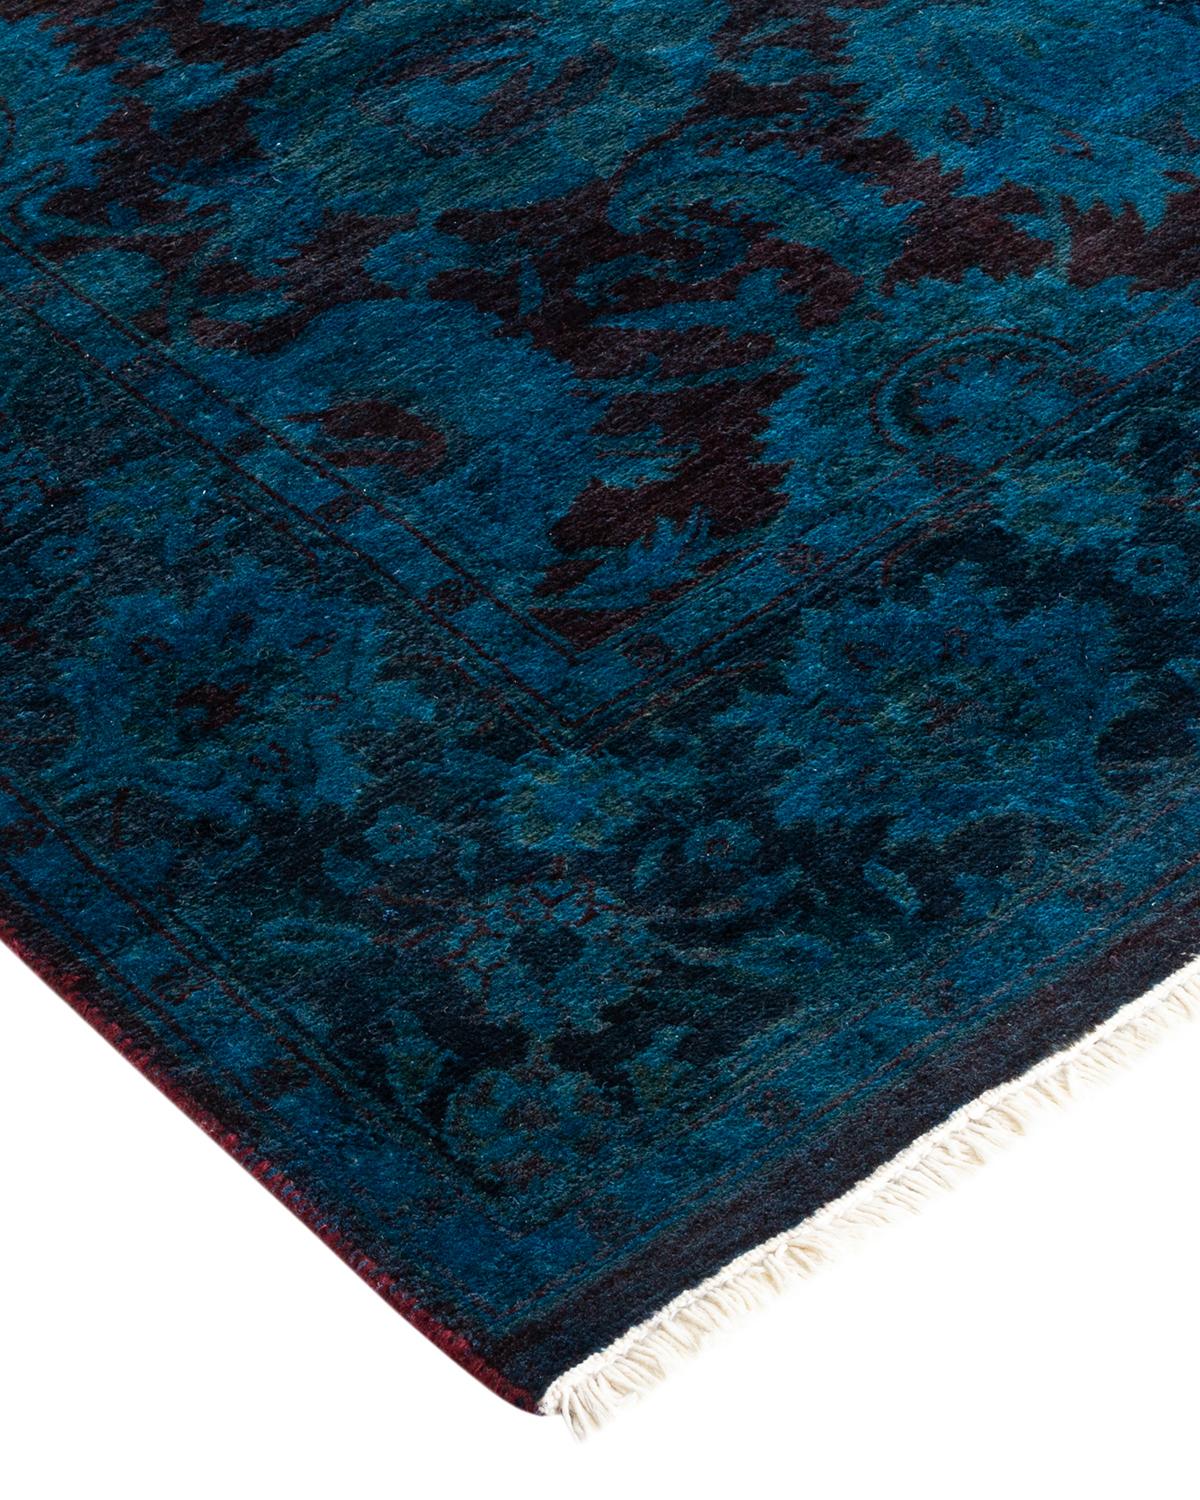 Les tapis Vibrance incarnent le classique avec une touche d'originalité : des motifs traditionnels surteints dans des couleurs éclatantes. Chaque tapis noué à la main est lavé dans une teinture botanique 100 % naturelle qui révèle les nuances